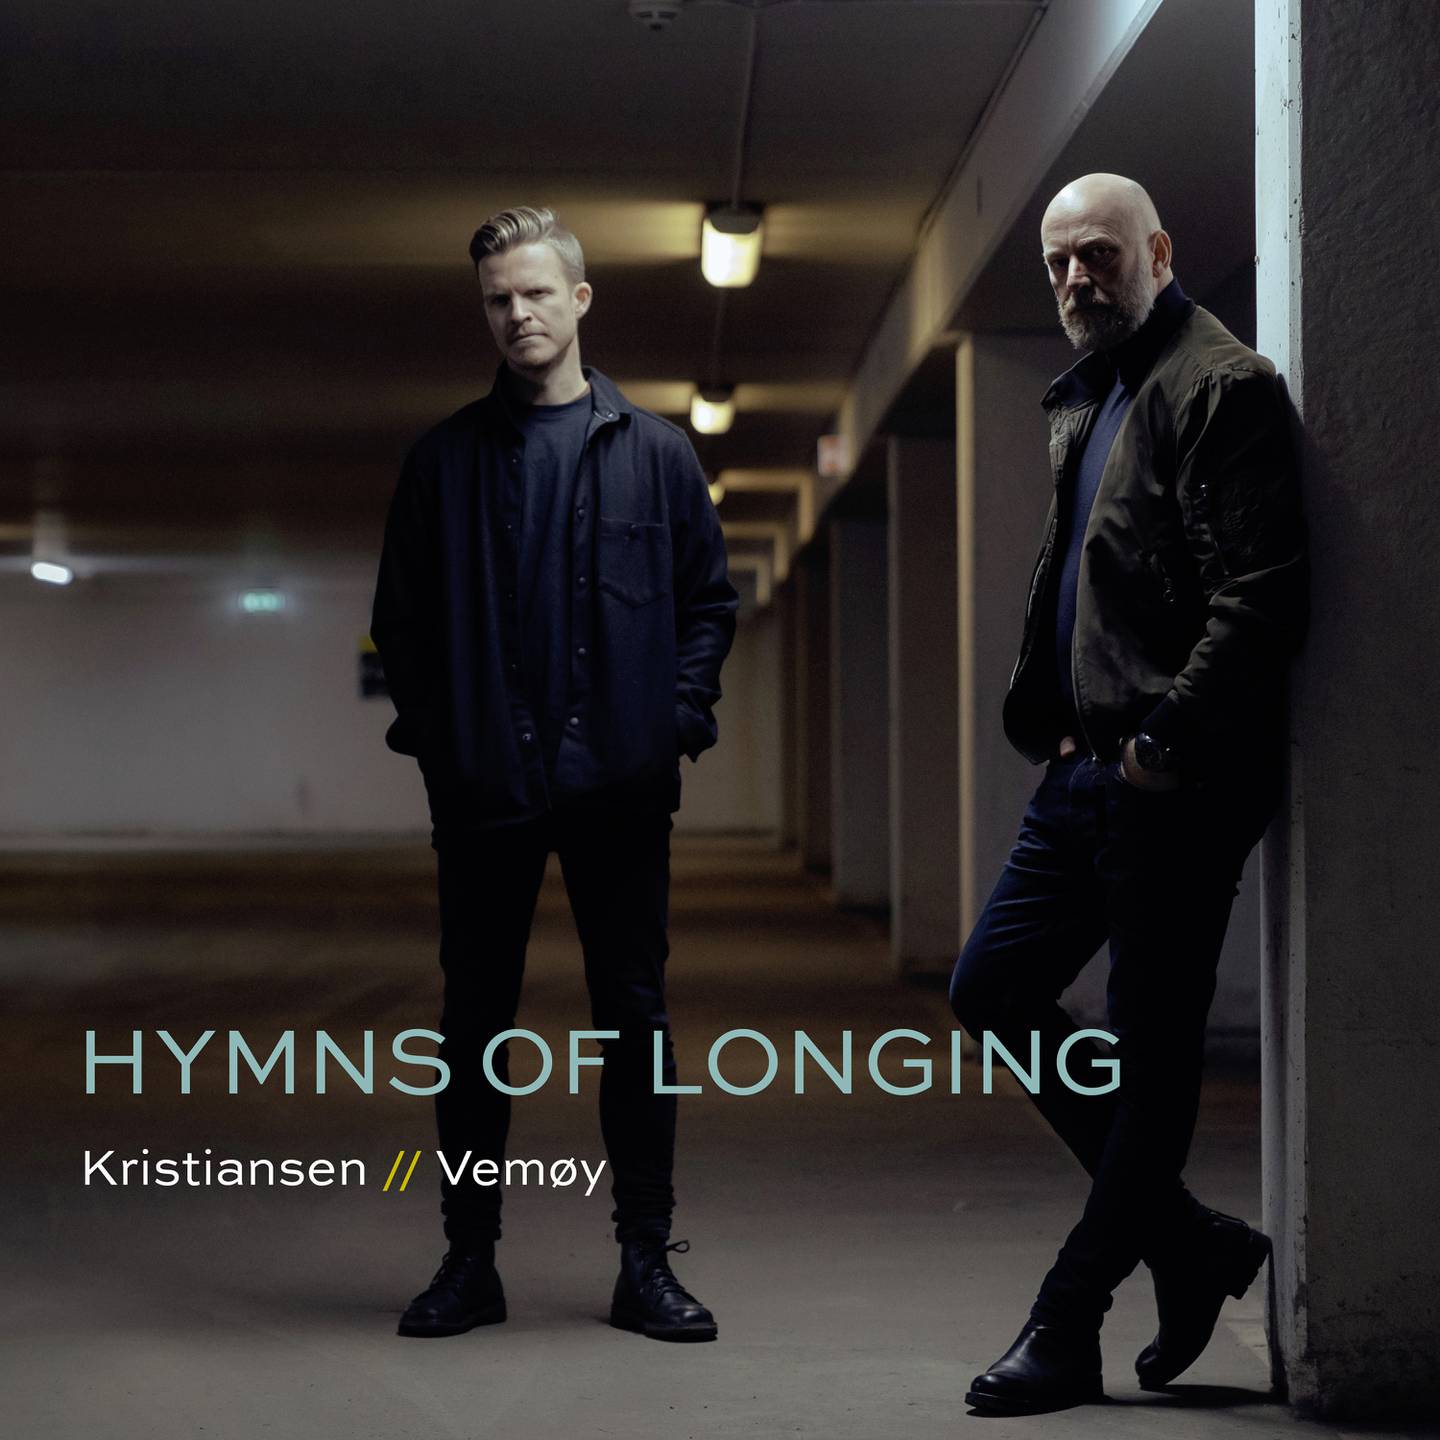 Kristiansen/Vemøy: "Longing"